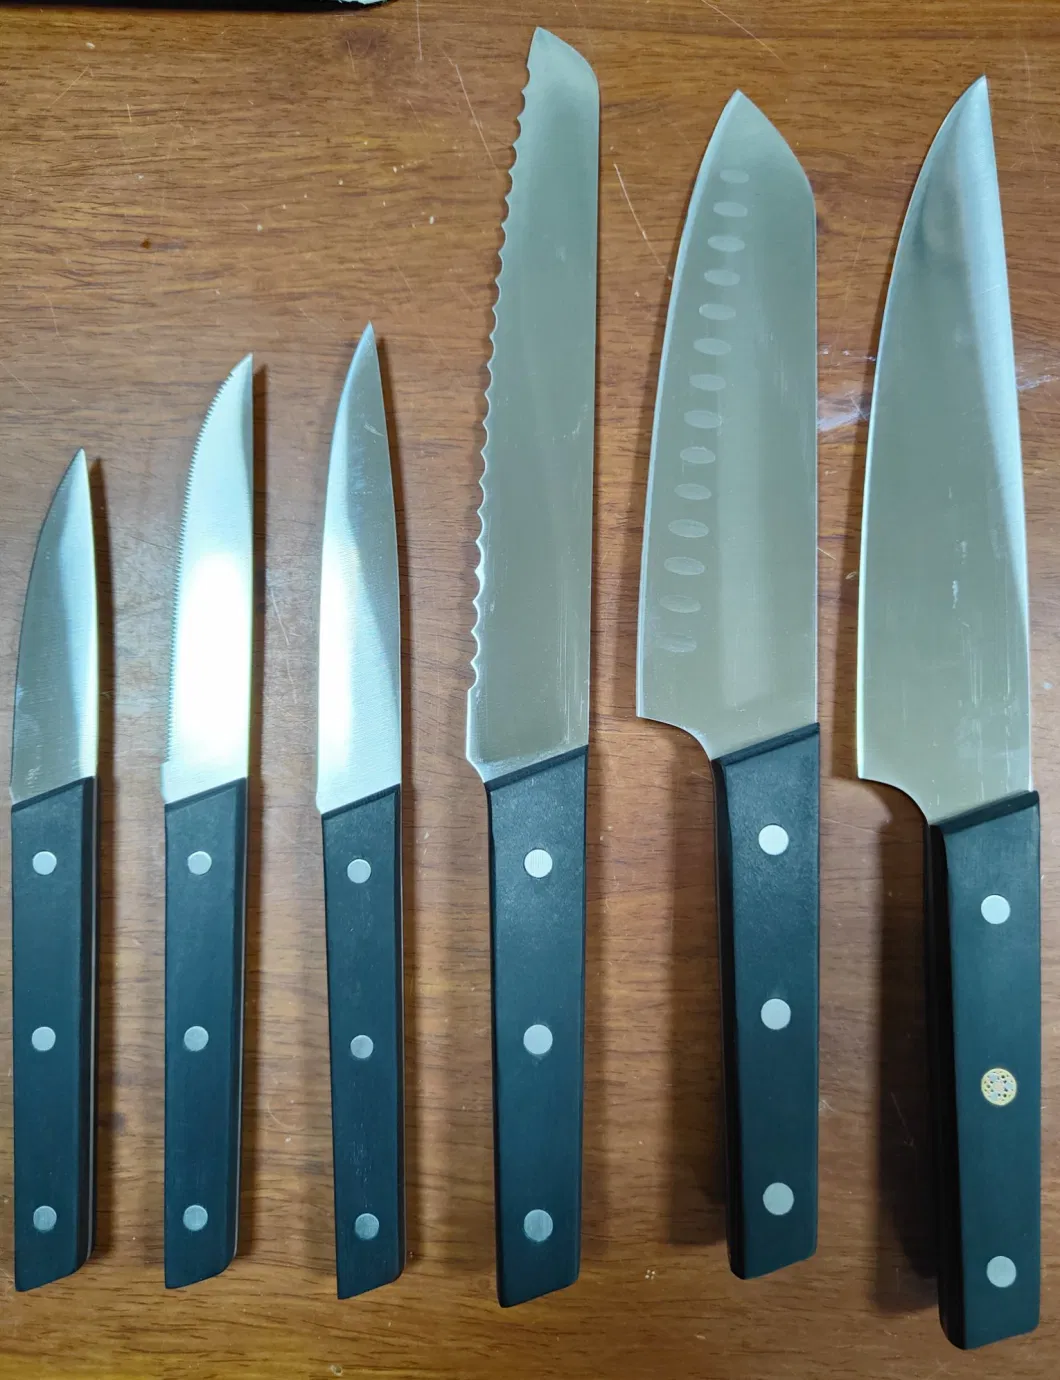 Kitchen Knife, Chef Knife, Santoku Knife, Bread Knife, Steak Knife, Fruit Knife Set